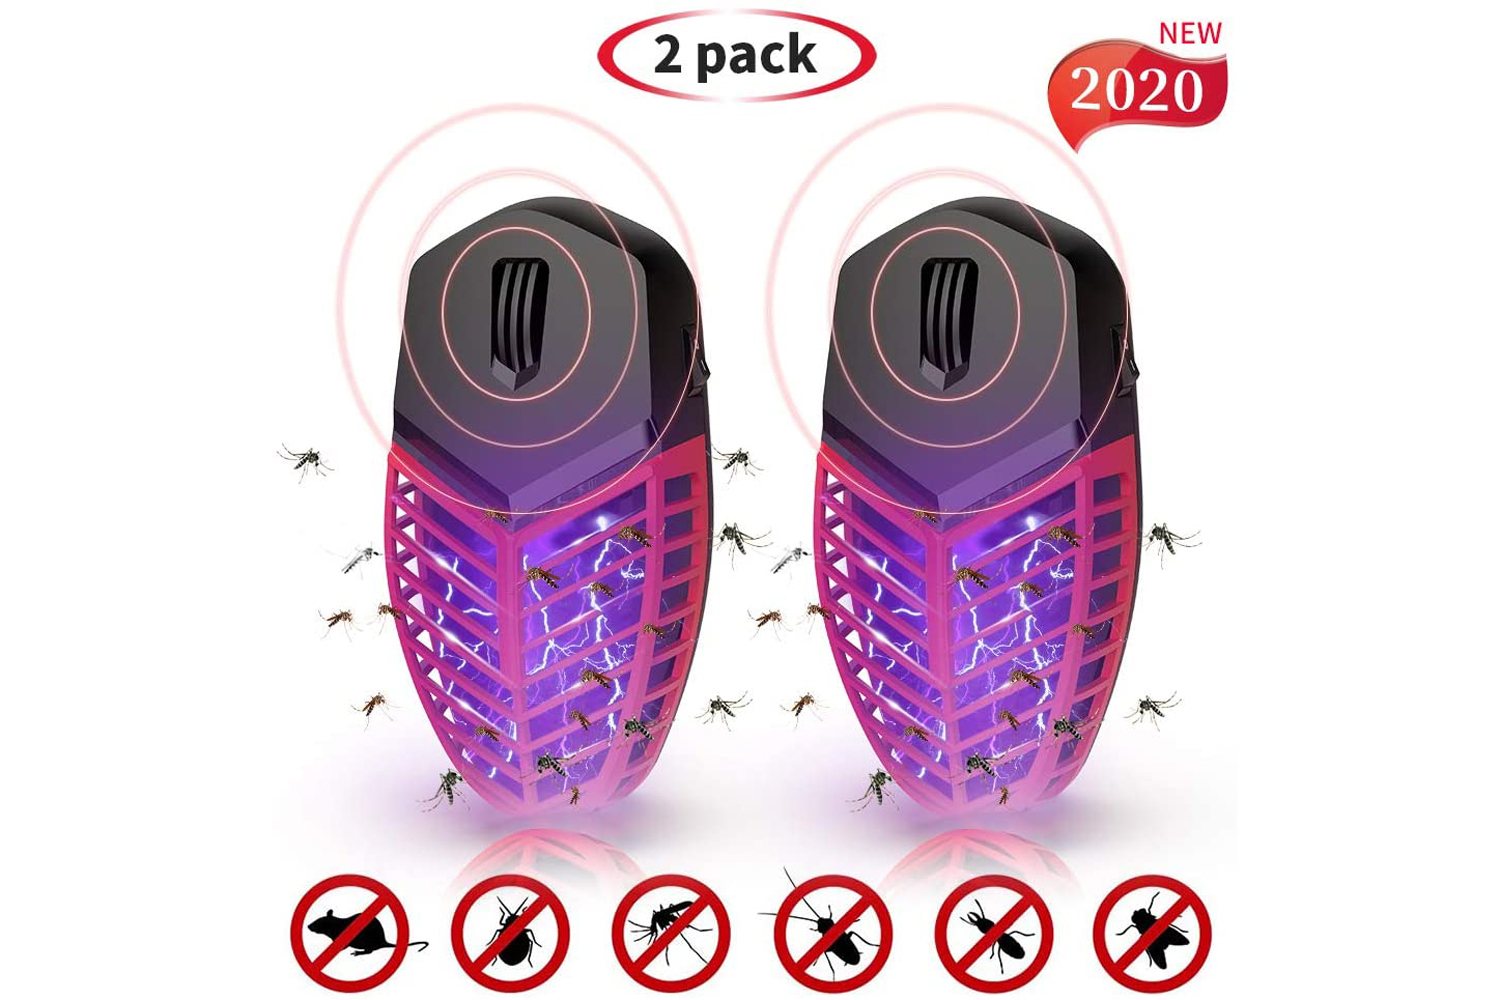 
                                    
                                Gli accessori anti-zanzare innovativi e naturali per tenere lontani gli insetti molesti